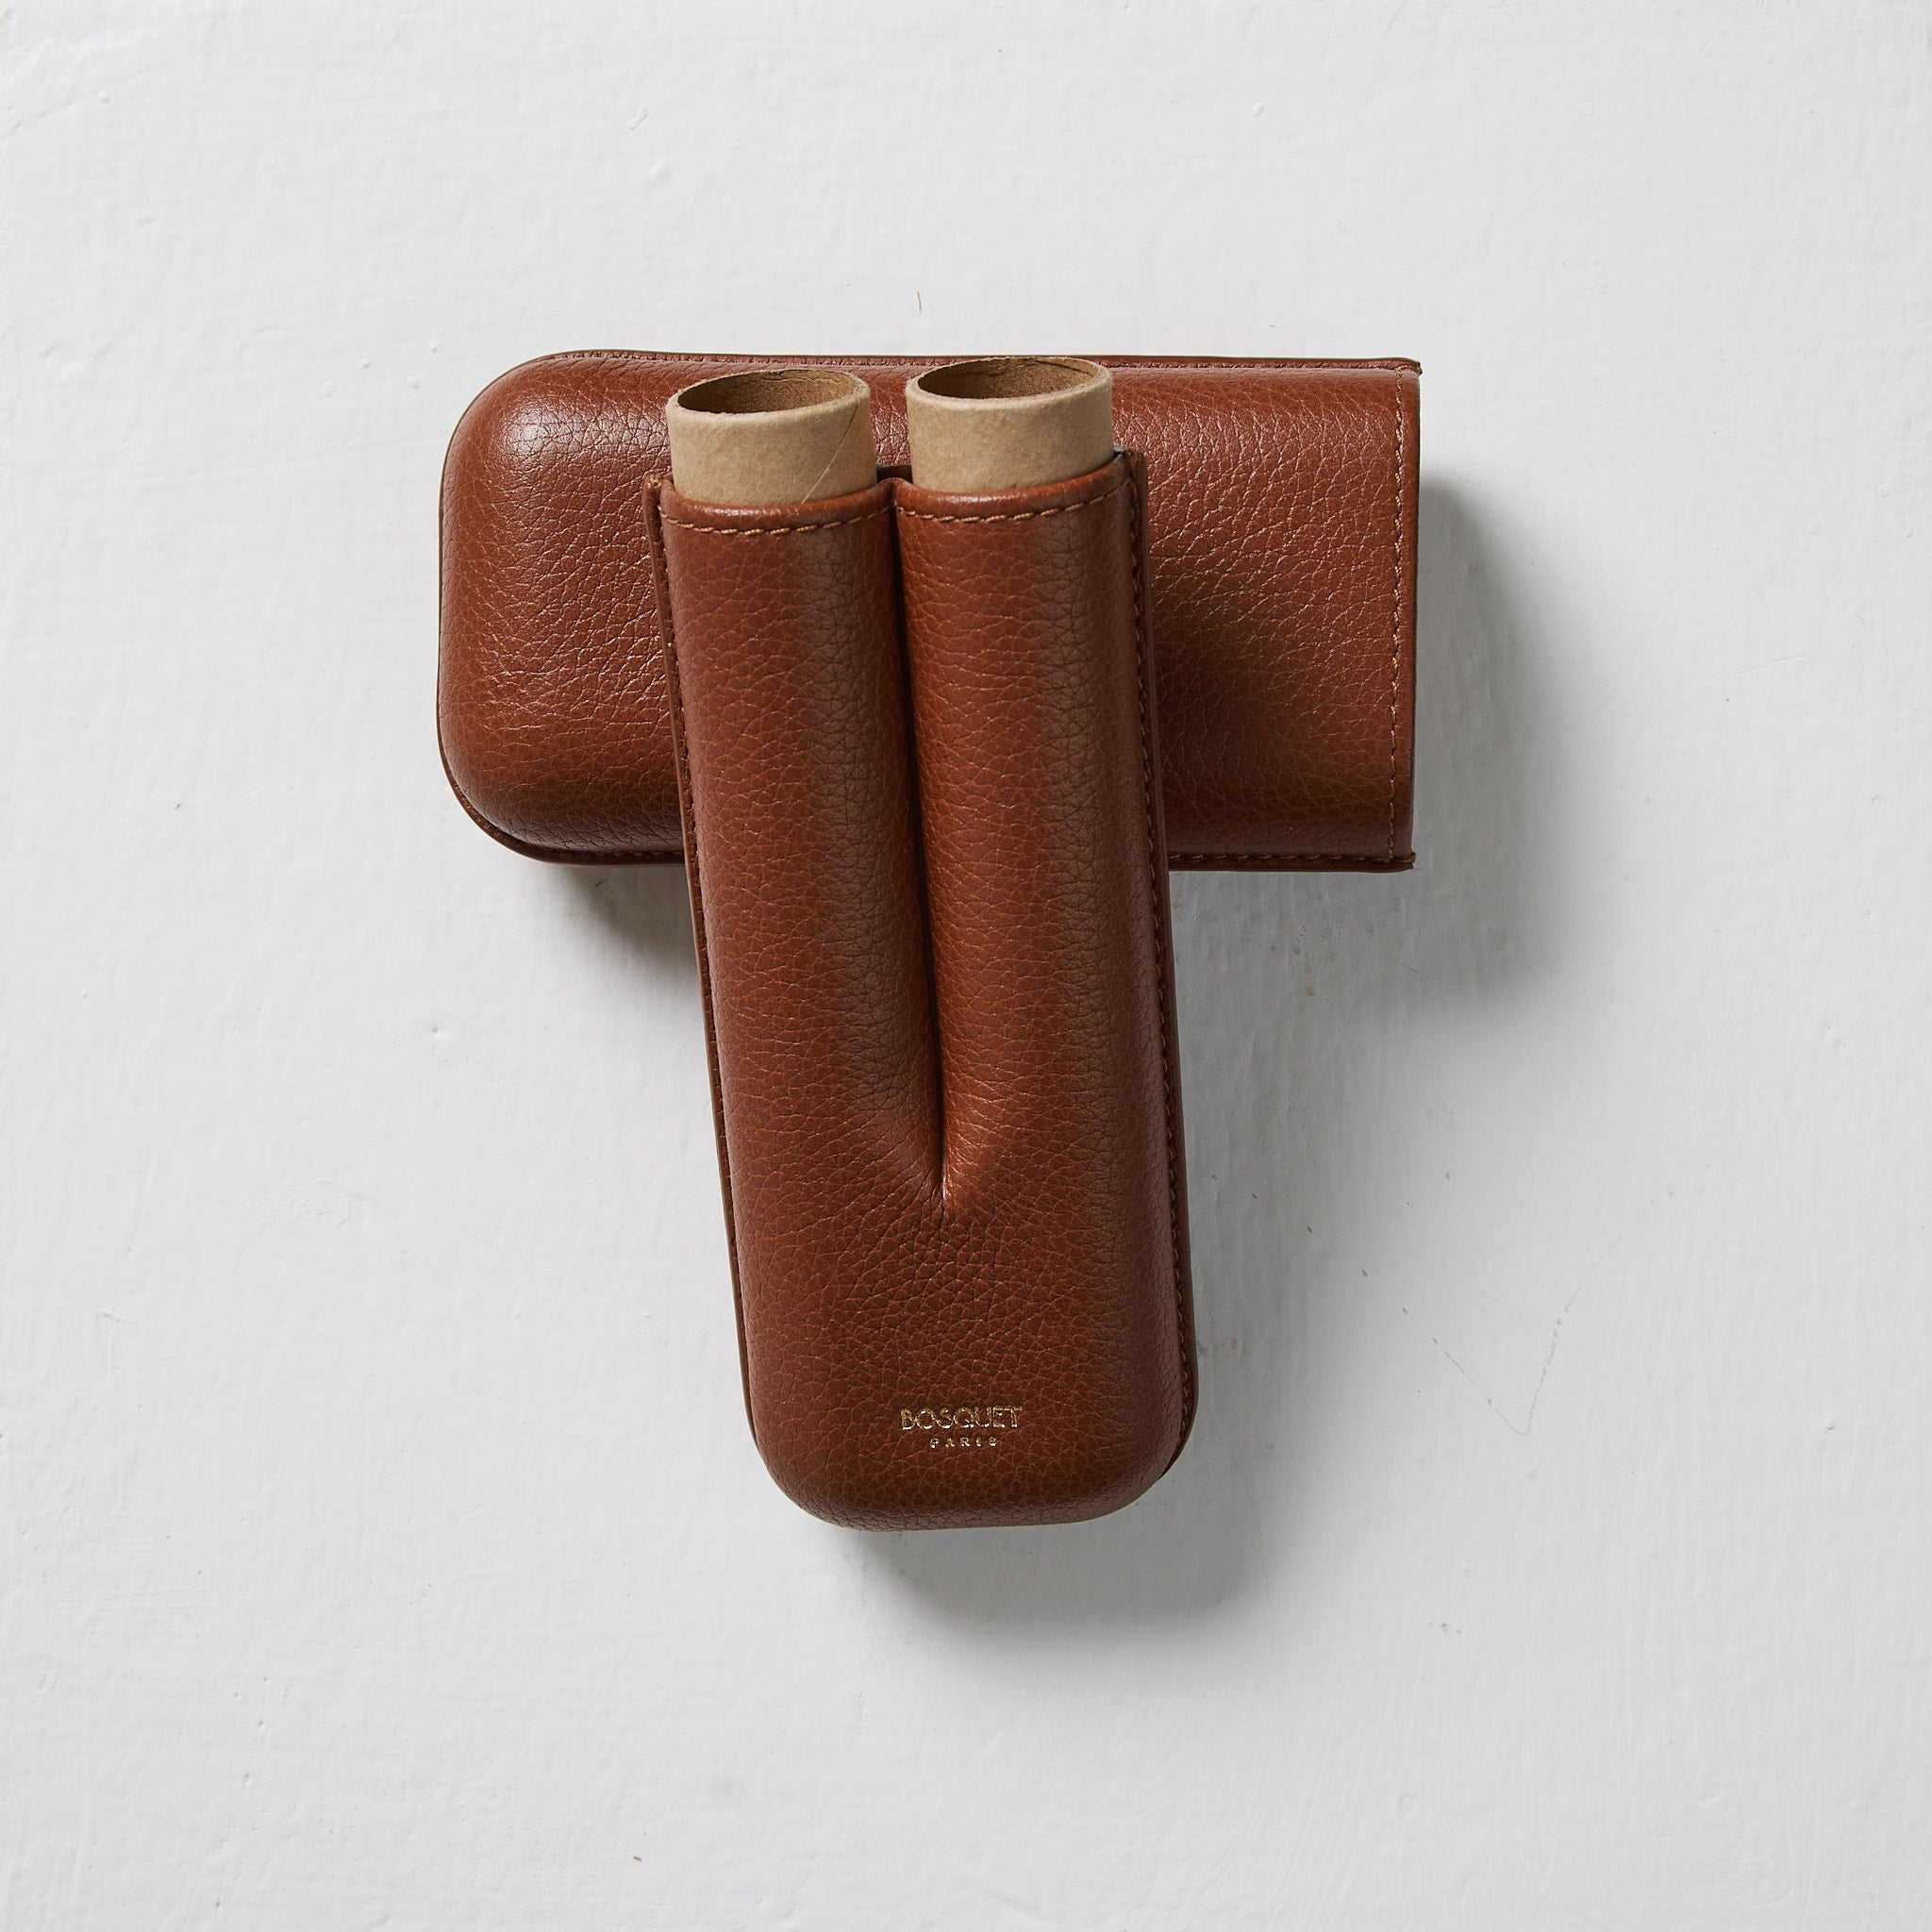 Buy Luxury Leather 2 Finger Cigar Cases | Bosquet Paris